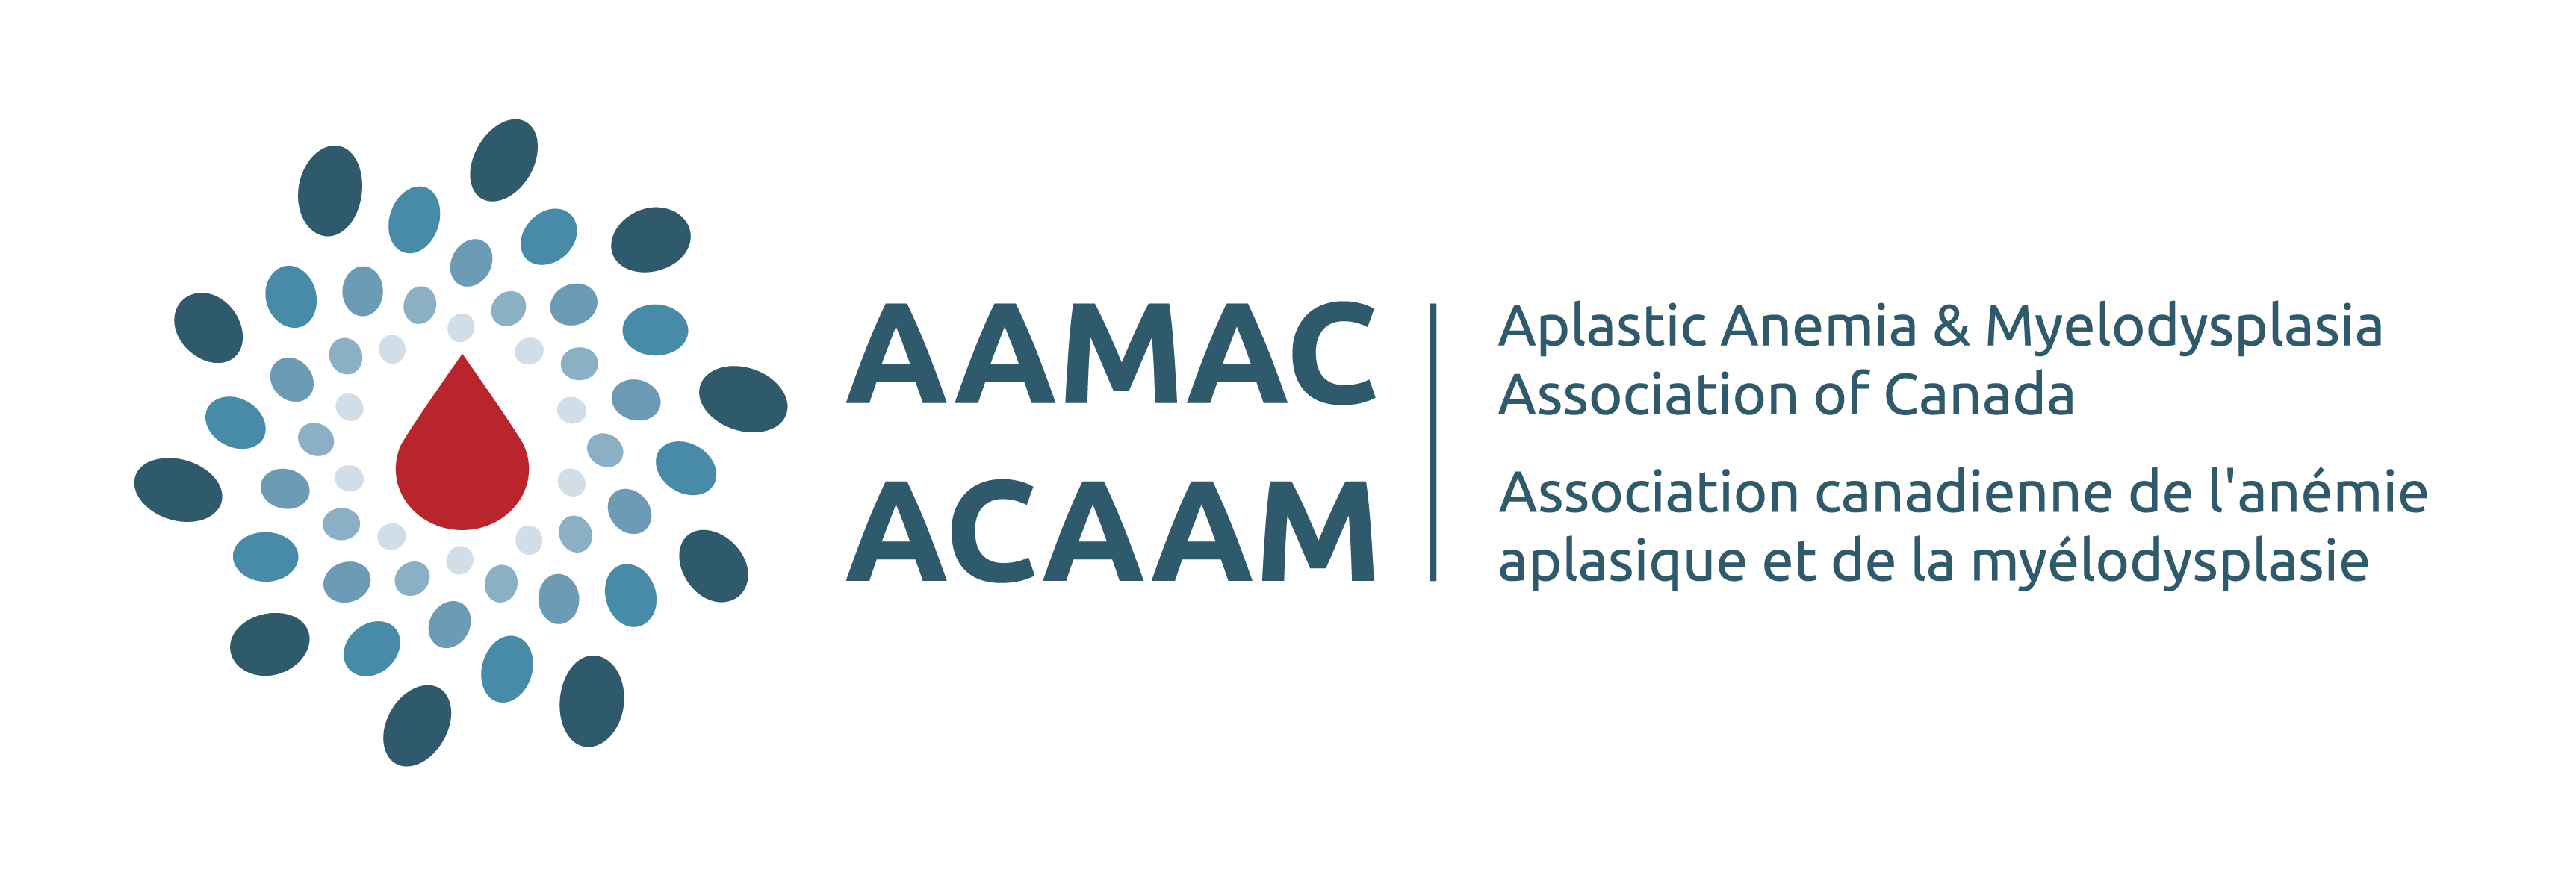 Aplastic Anemia & Myelodysplasia Association of Canada / Association canadienne de l'anémie aplasique et de la myélodysplasie  logo